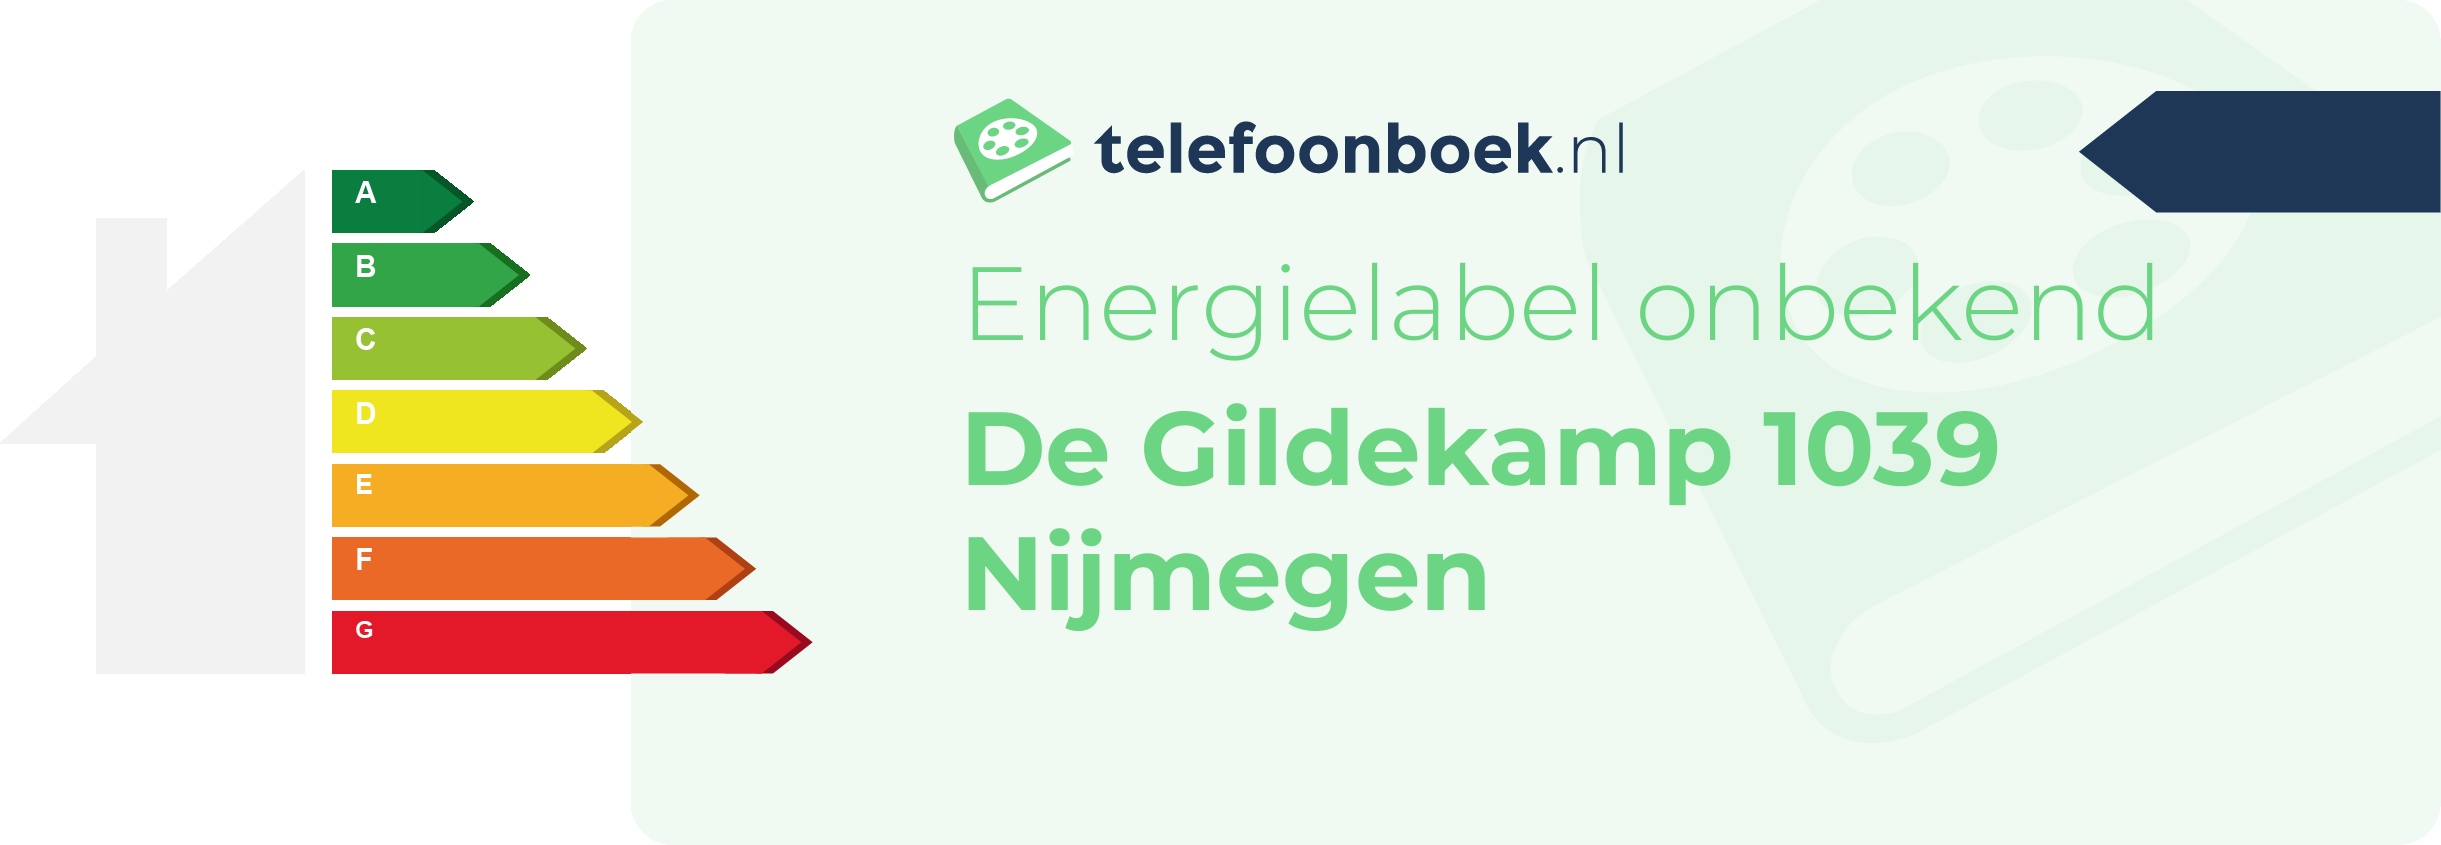 Energielabel De Gildekamp 1039 Nijmegen